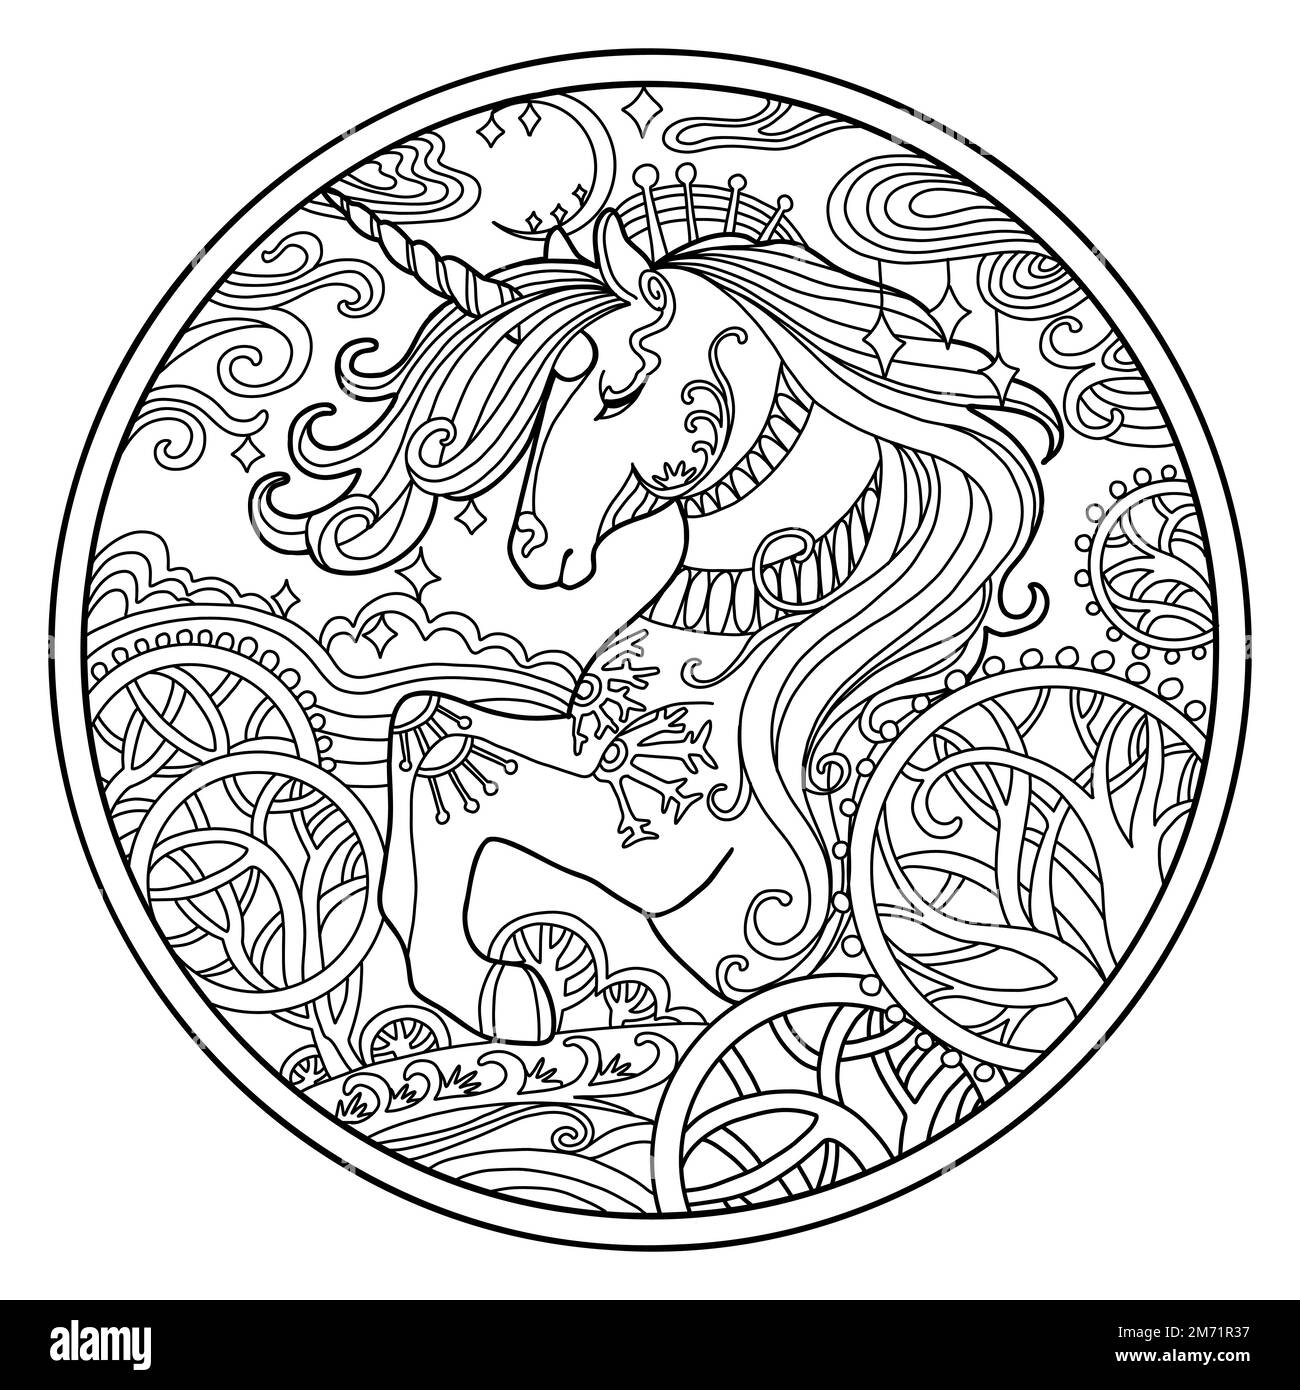 Pagina del libro di colorazione vettoriale unicorno ornato con fiori magici, composizione circolare. Disegno di schizzo a mano libera anti-sollecitazione con elementi grovigli e dentini. Per Illustrazione Vettoriale